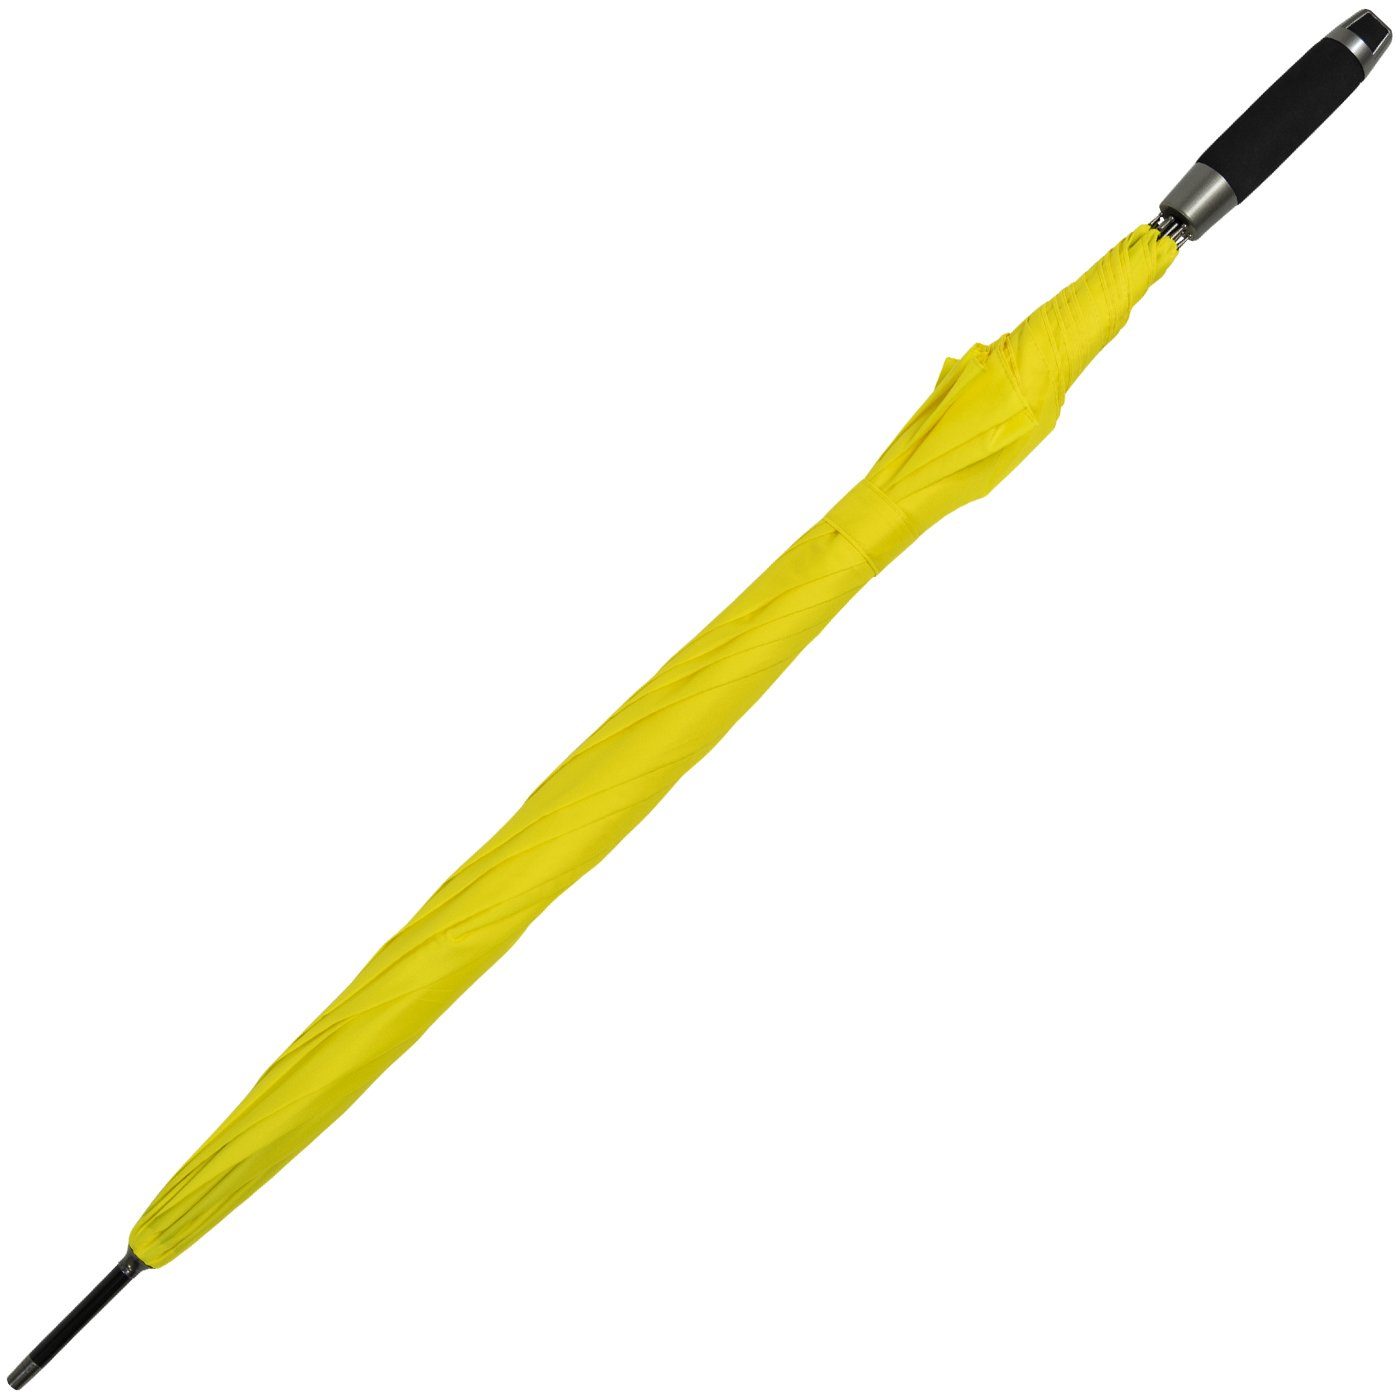 Damen XXL und - groß Herren, Partnerschirm gelb doppler® und für Langregenschirm stabil, uni-Sommerfarben Golfschirm,